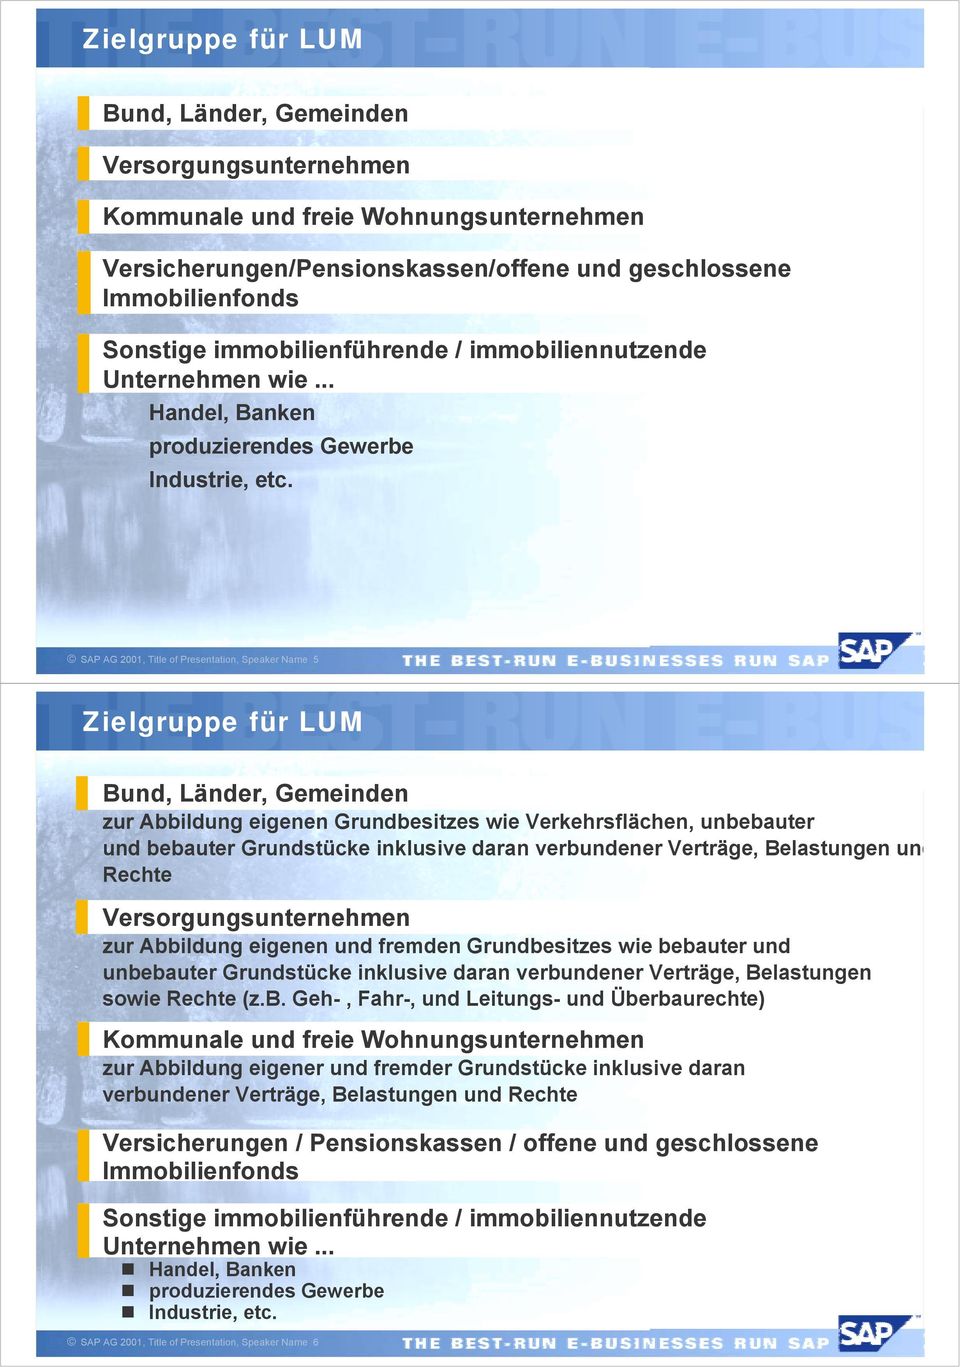 SAP AG 2001, Title of Presentation, Speaker Name 5 Zielgruppe für LUM Bund, Länder, Gemeinden zur Abbildung eigenen Grundbesitzes wie Verkehrsflächen, unbebauter und bebauter Grundstücke inklusive